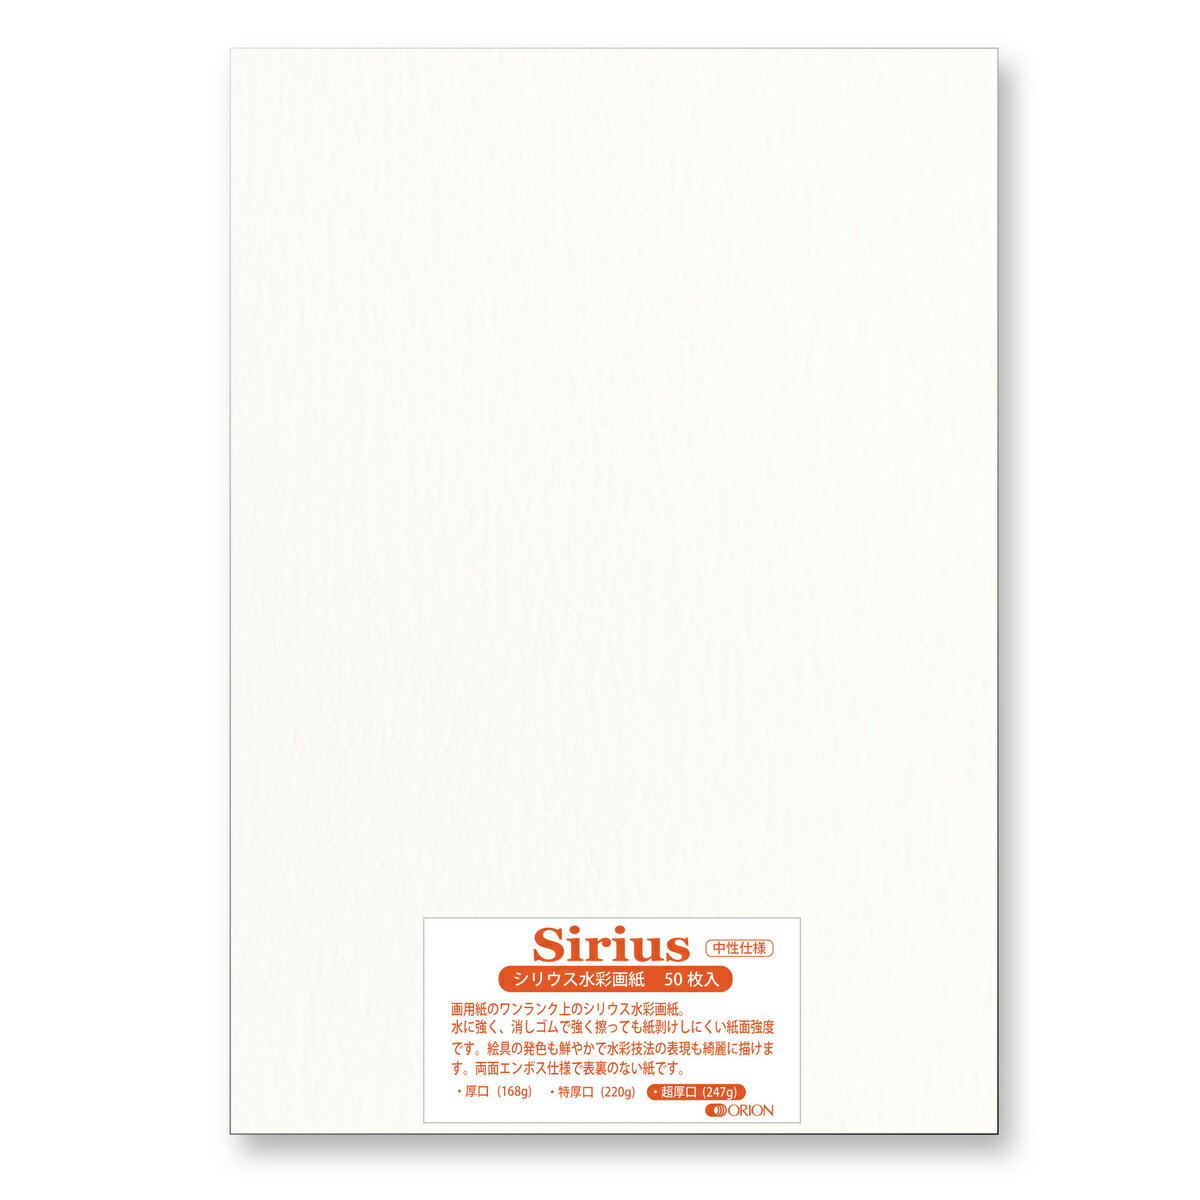 画用紙 シリウス水彩紙 超厚口 247g 50枚入 A4サイズ オリオン 水彩画用紙 297mm 210mm